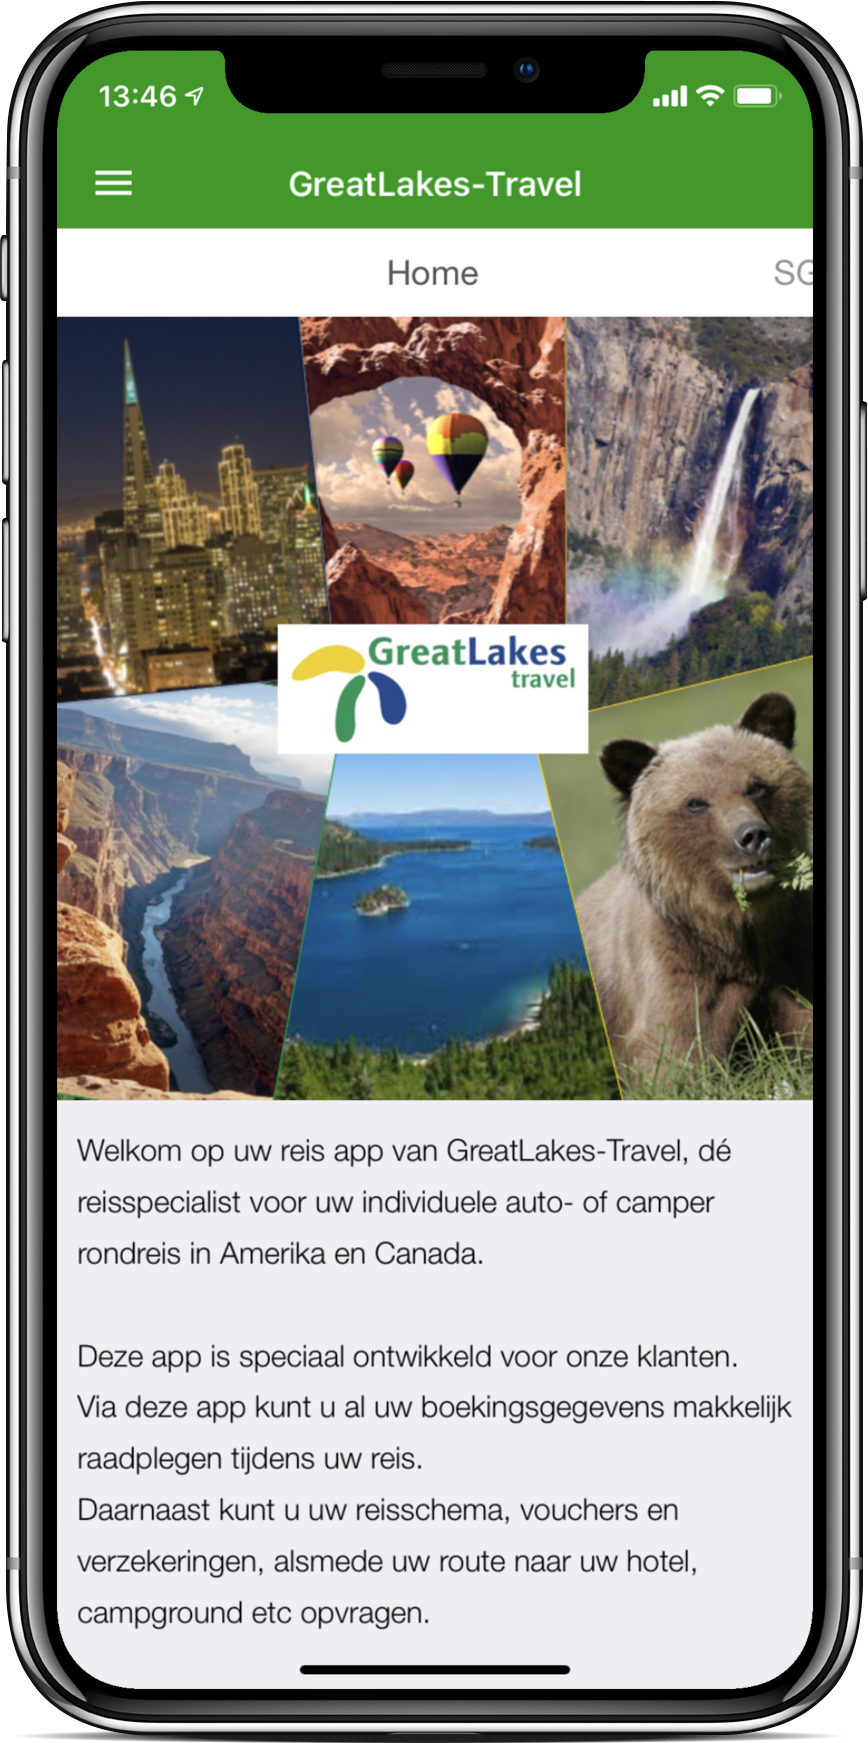 GreatLakes-Travel dé reisspecialist voor uw rondreis in Amerika en Canada